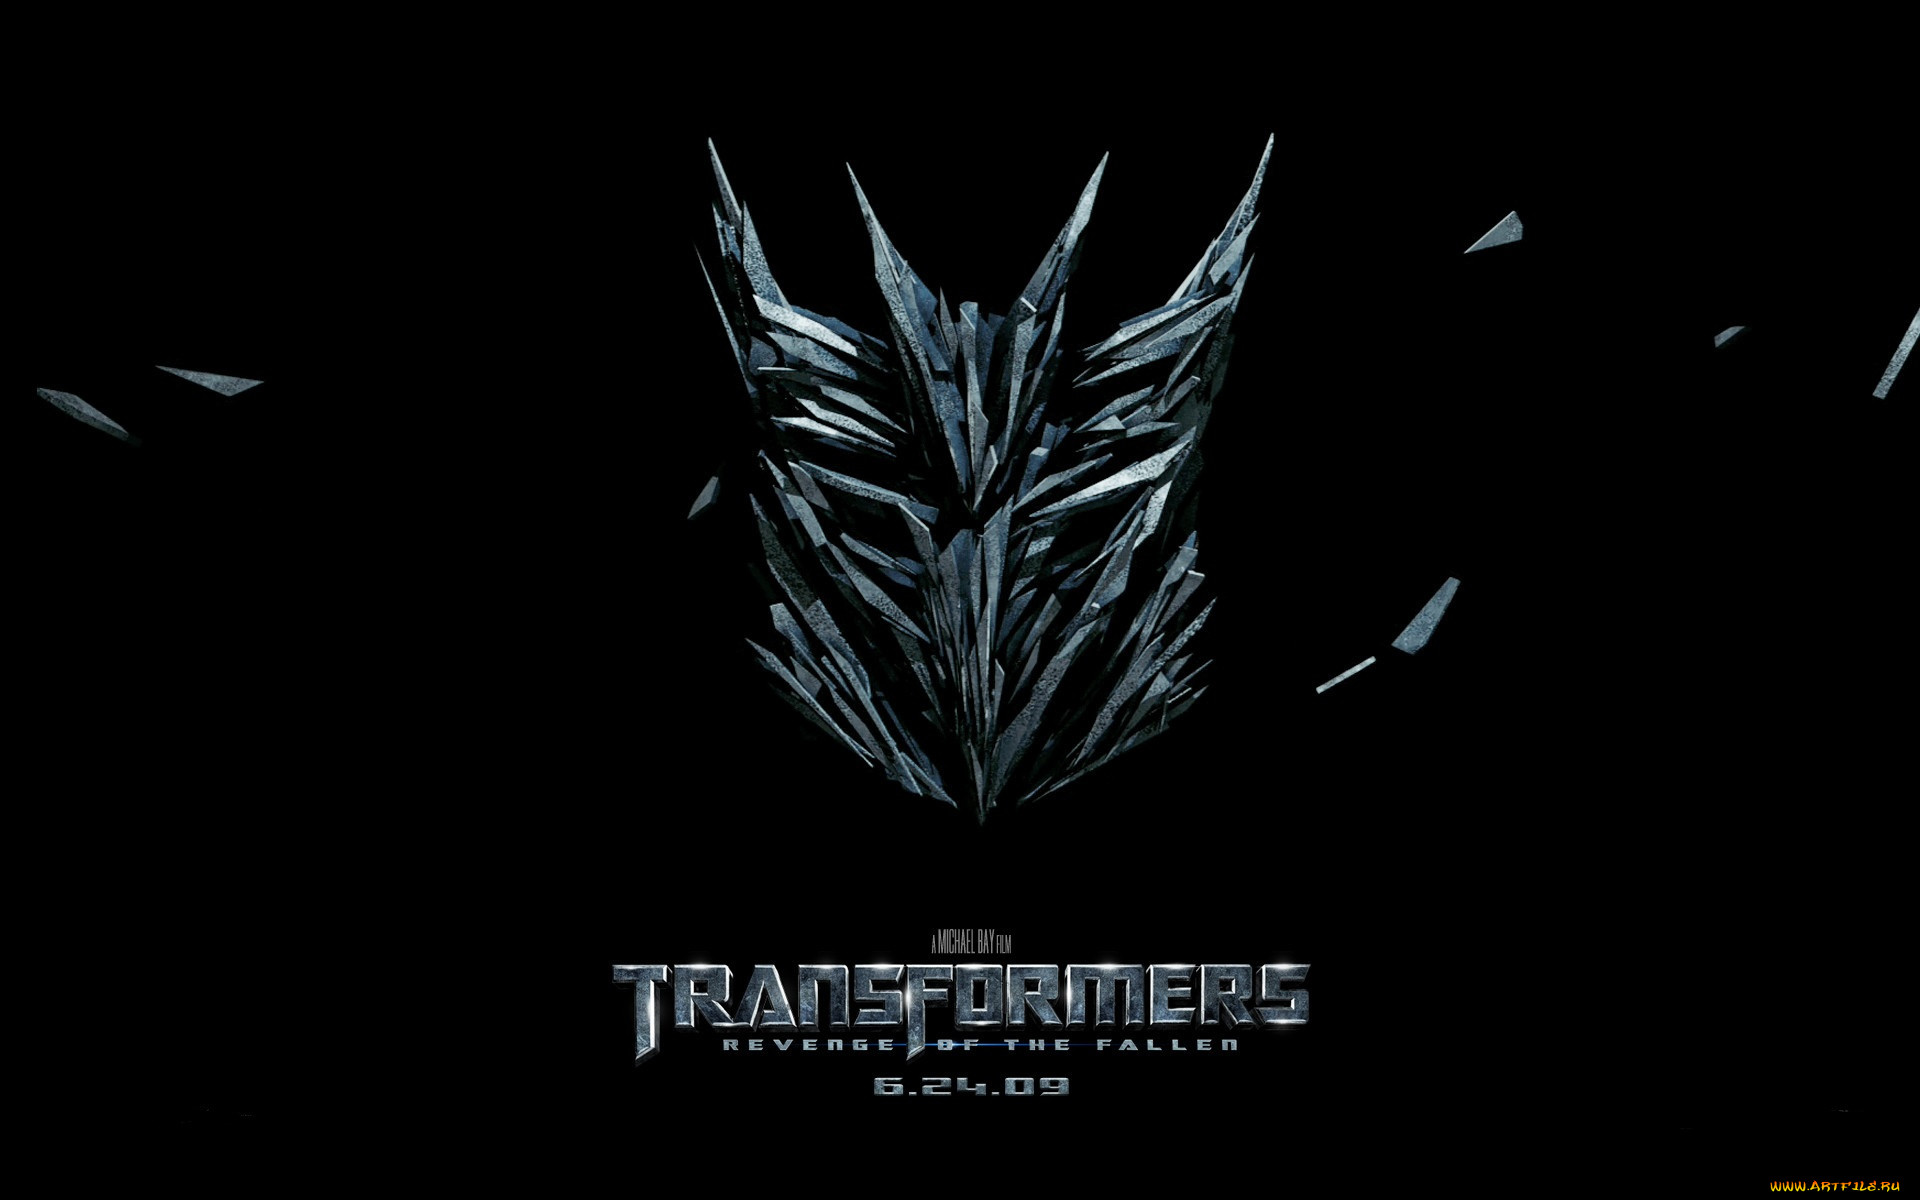  , transformers 2,  revenge of the fallen, , 